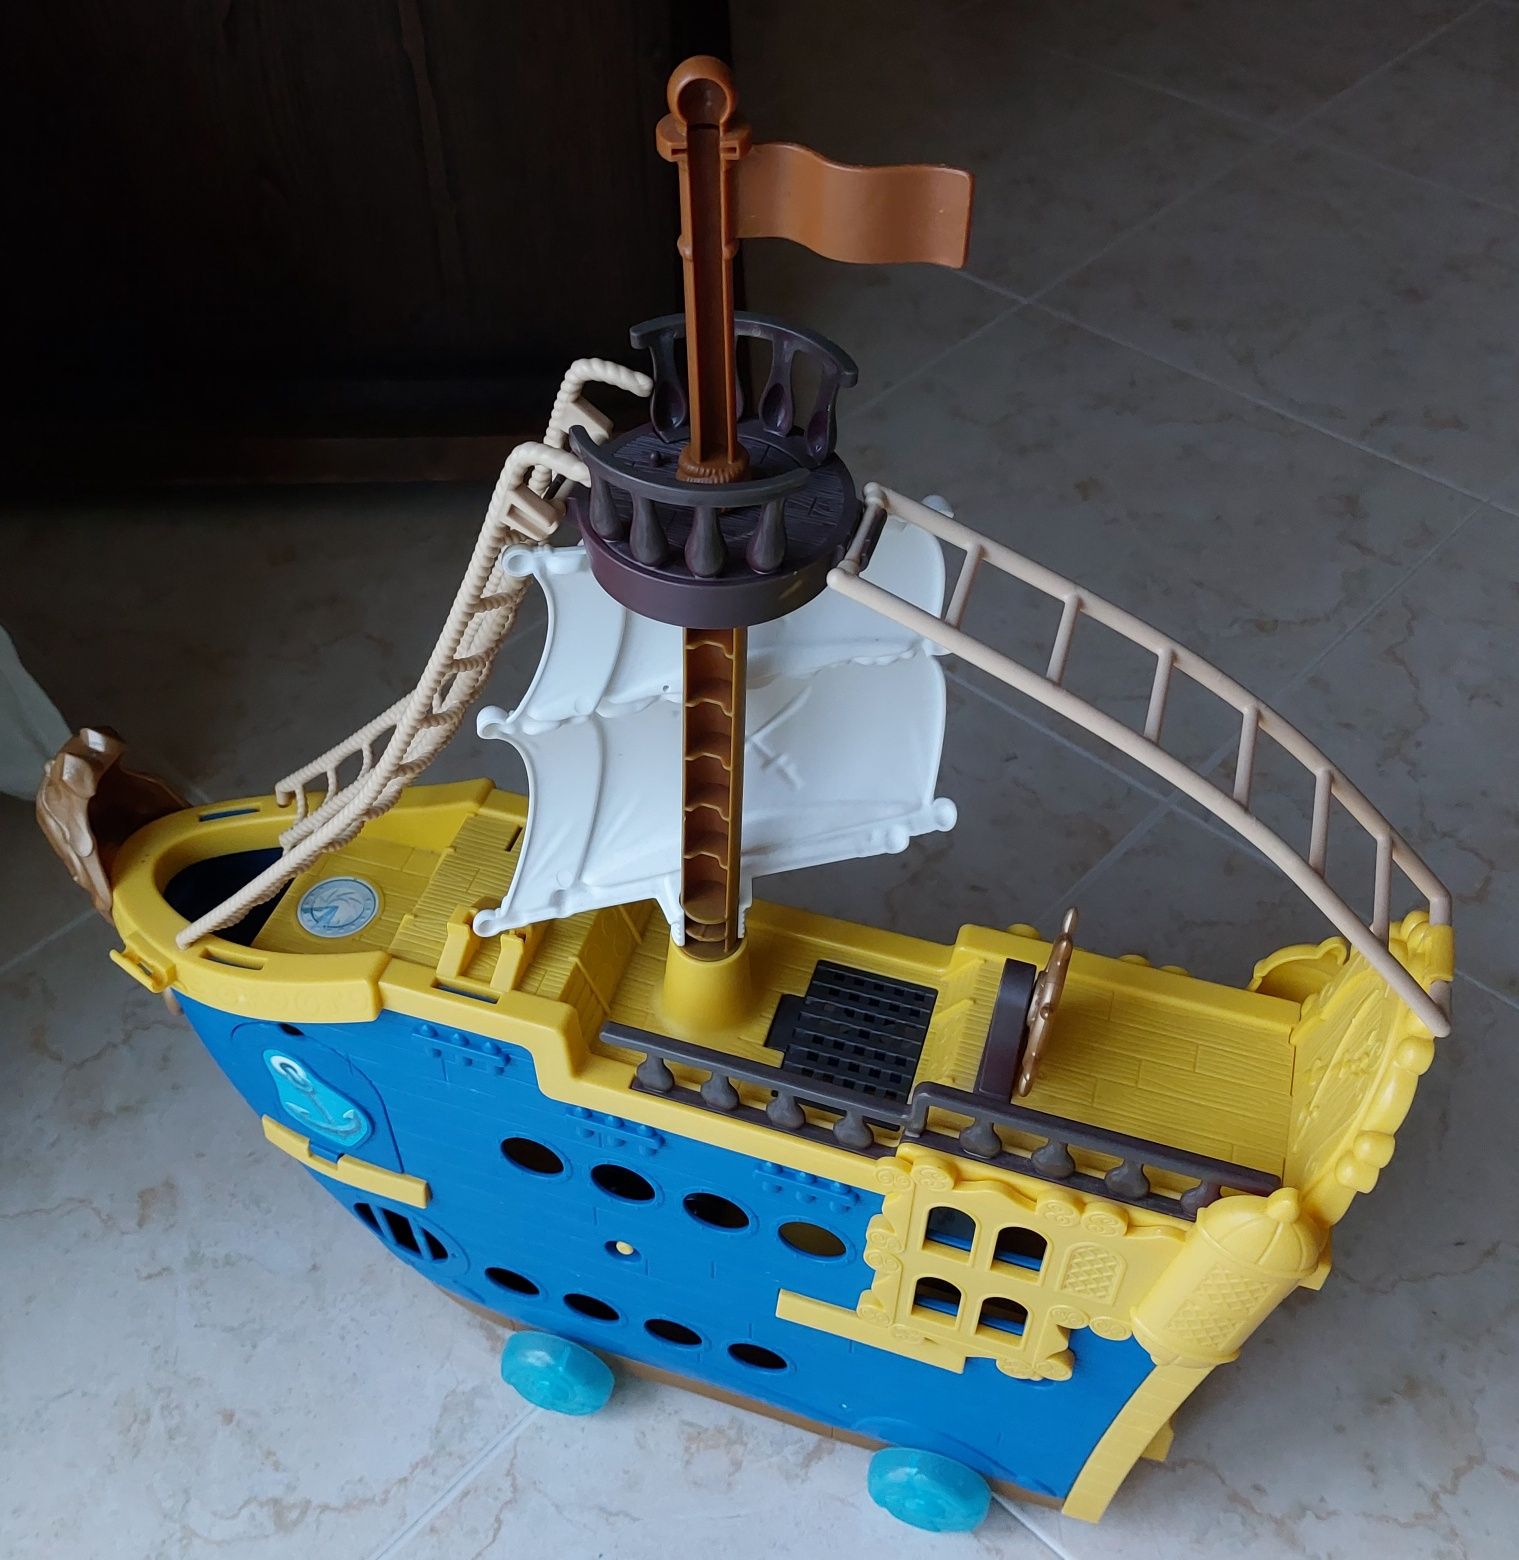 Barcos - Colosso dos Mares e barco do Capitão Gancho